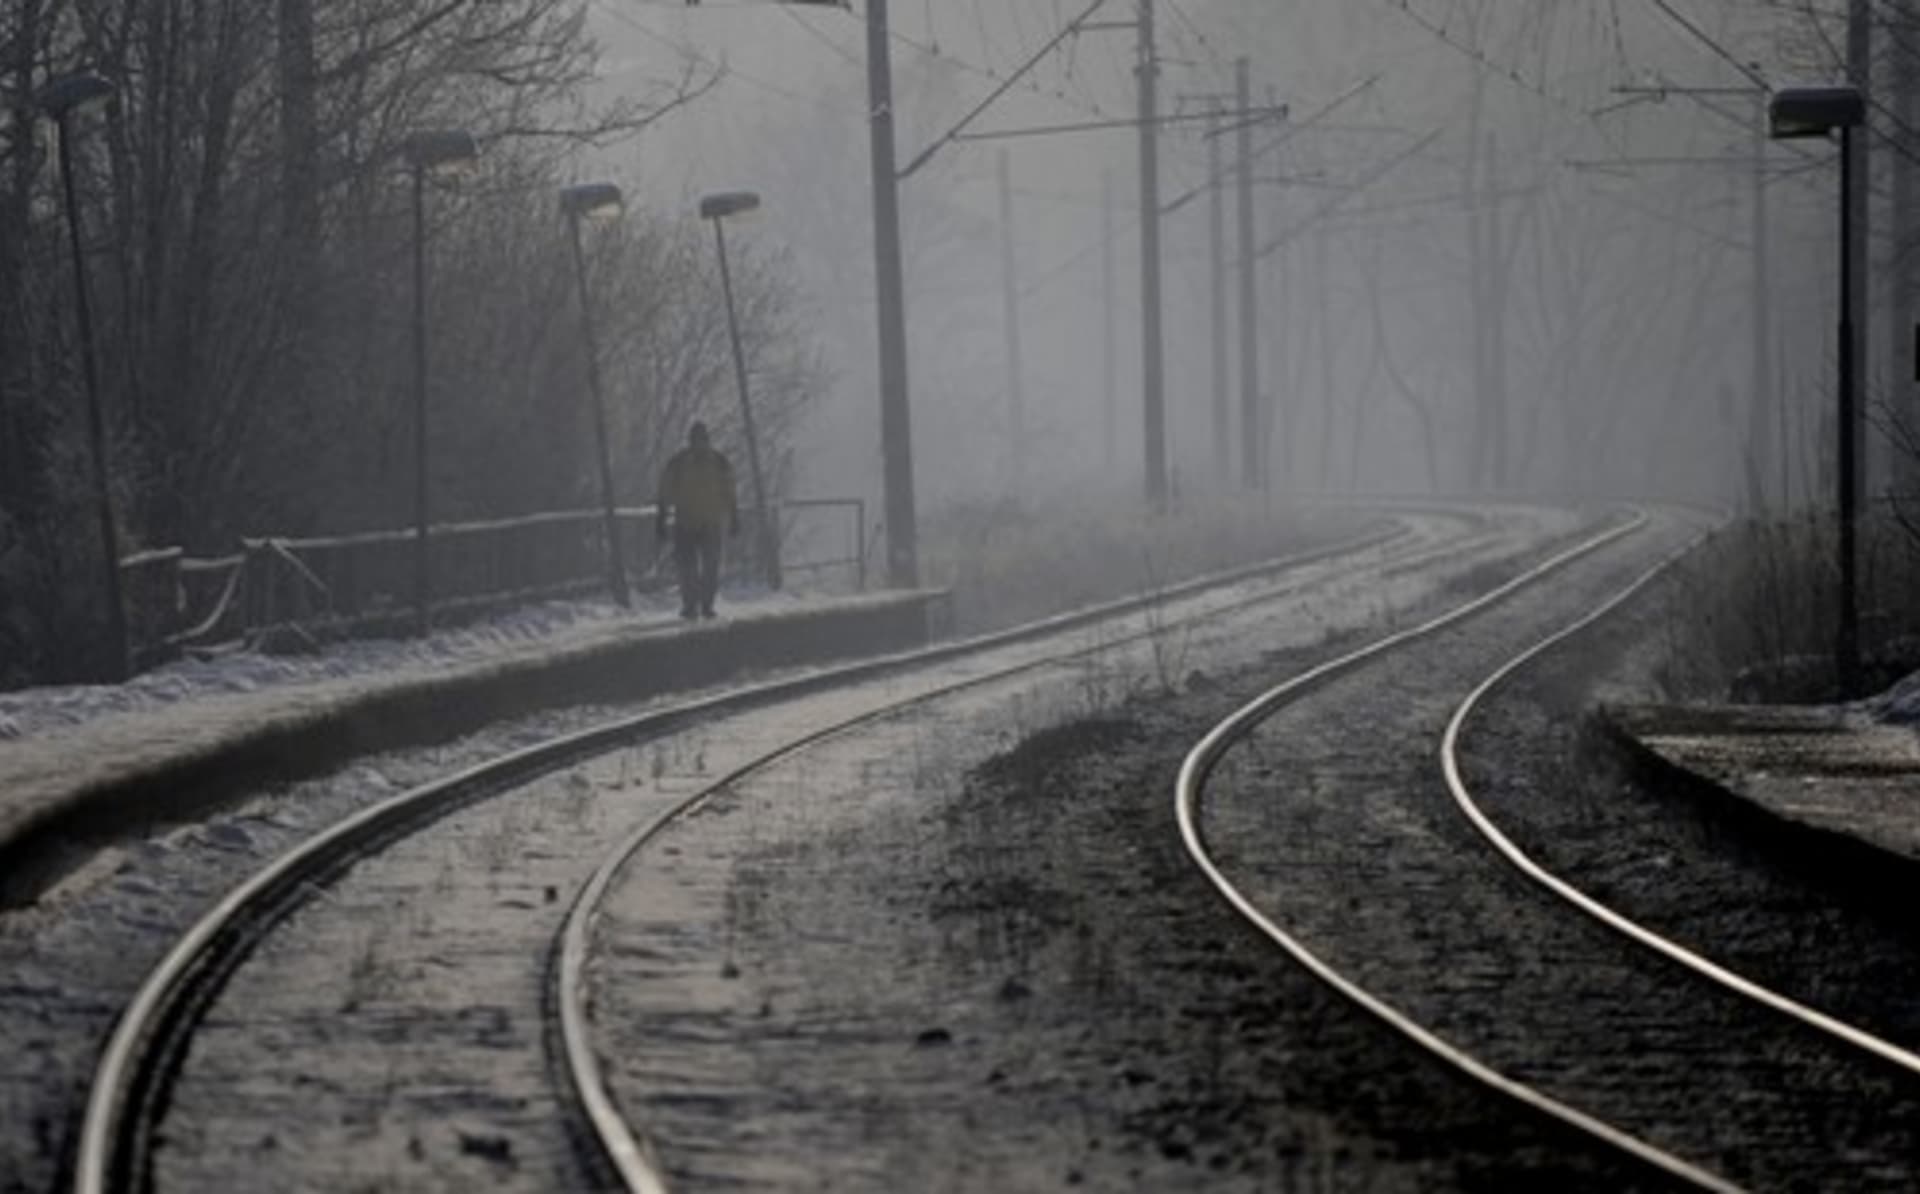 Dva životy si vyžádala železniční nehoda nedaleko Trenčína. (Ilustrační foto)